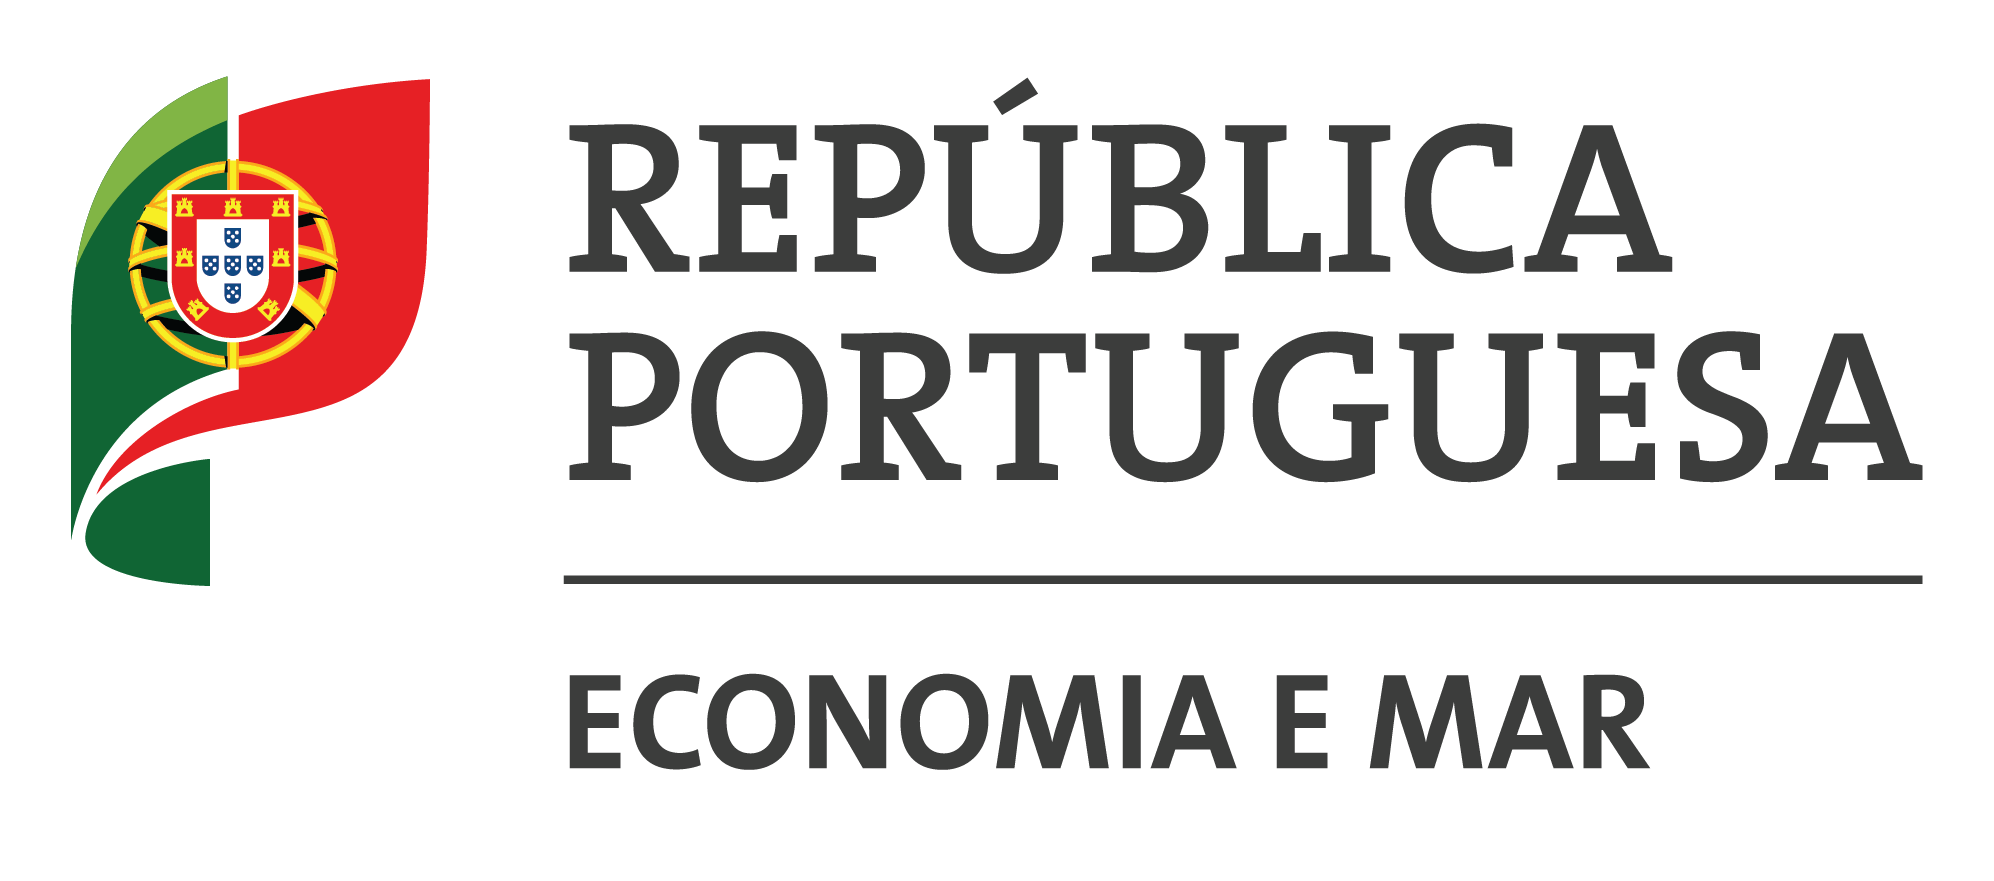 Ministério da Economia e Mar - República Portuguesa